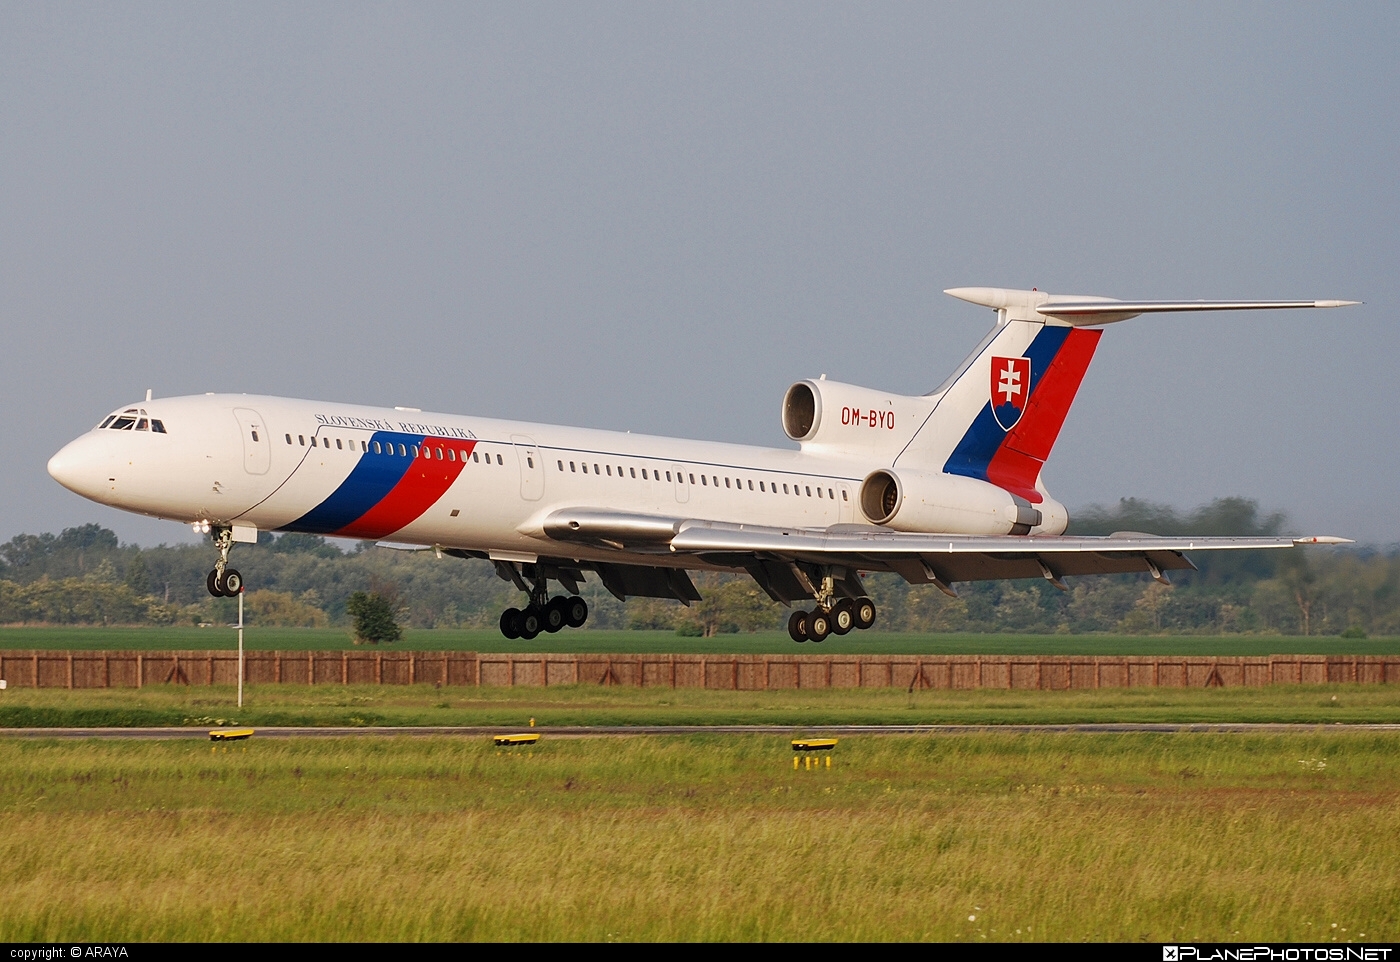 Tupolev Tu-154M - OM-BYO operated by Letecký útvar MV SR (Slovak Government Flying Service) #SlovakGovernmentFlyingService #leteckyutvarMVSR #tu154 #tu154m #tupolev